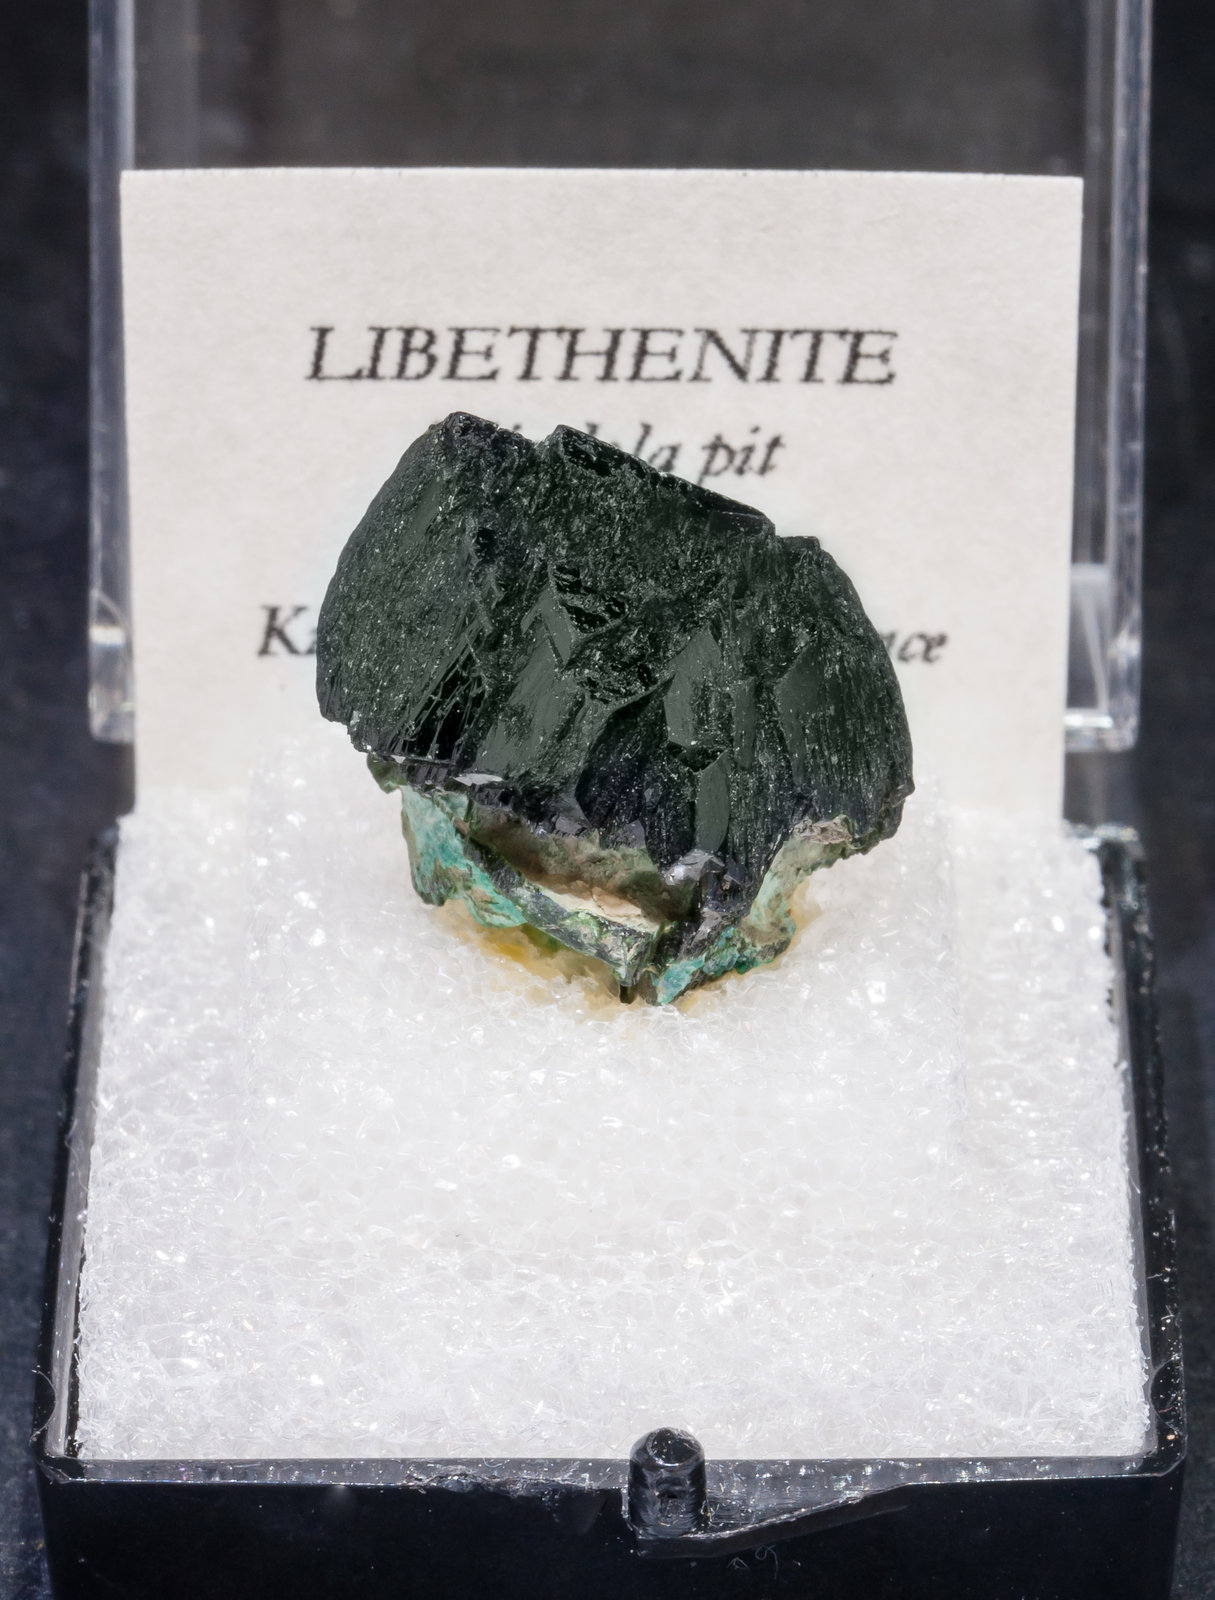 specimens/s_imagesAL8/Libethenite-TV96AL8f1.jpg